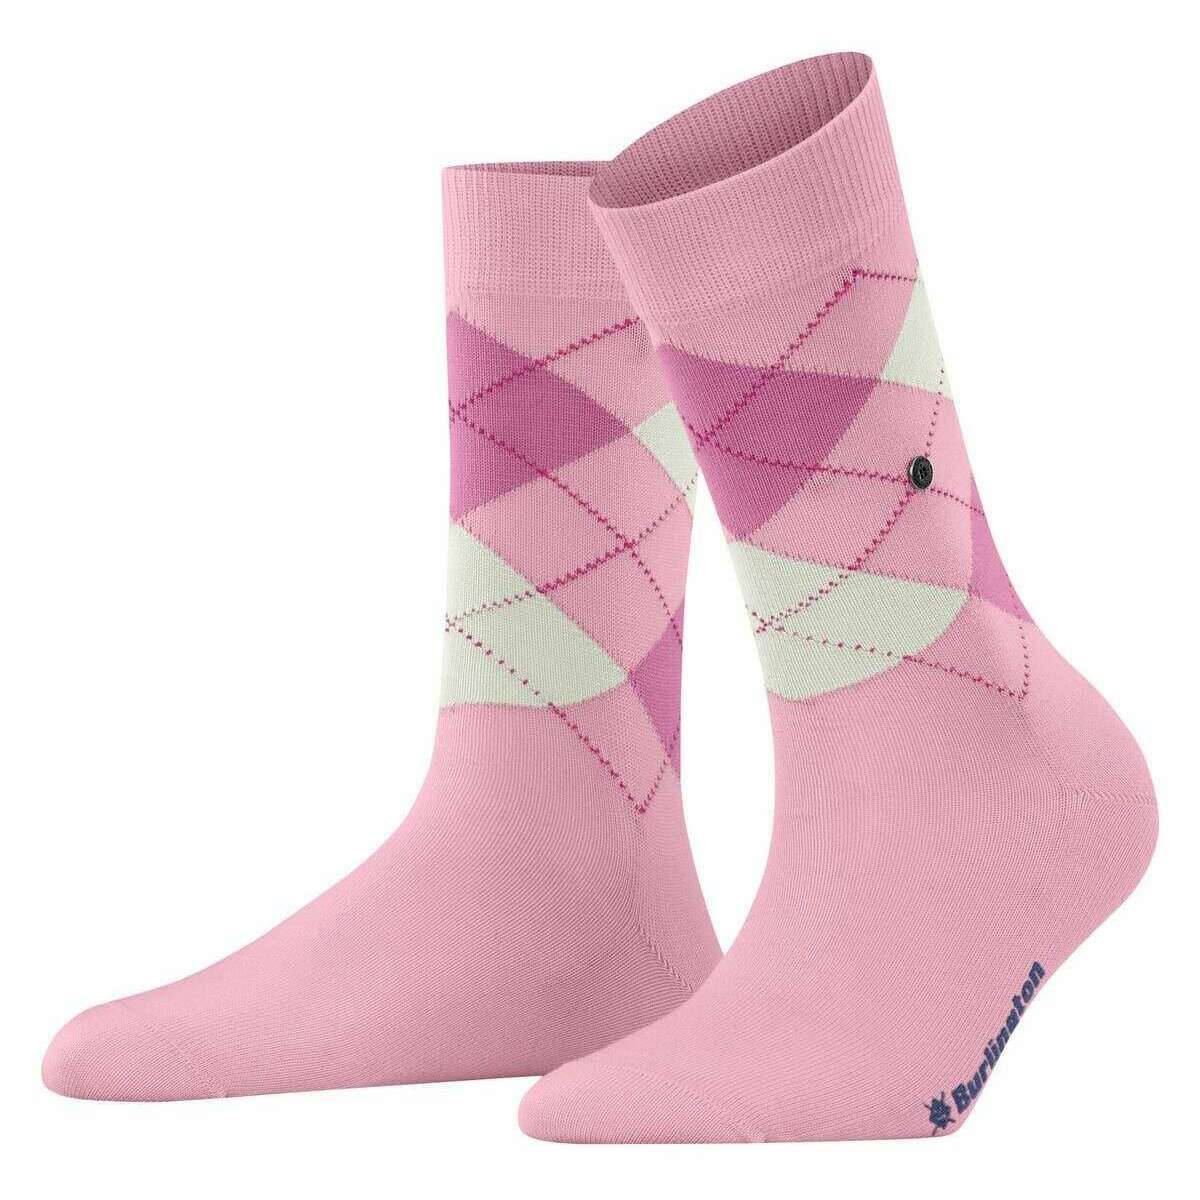 Burlington Covent Garden Socks - Rose Pink